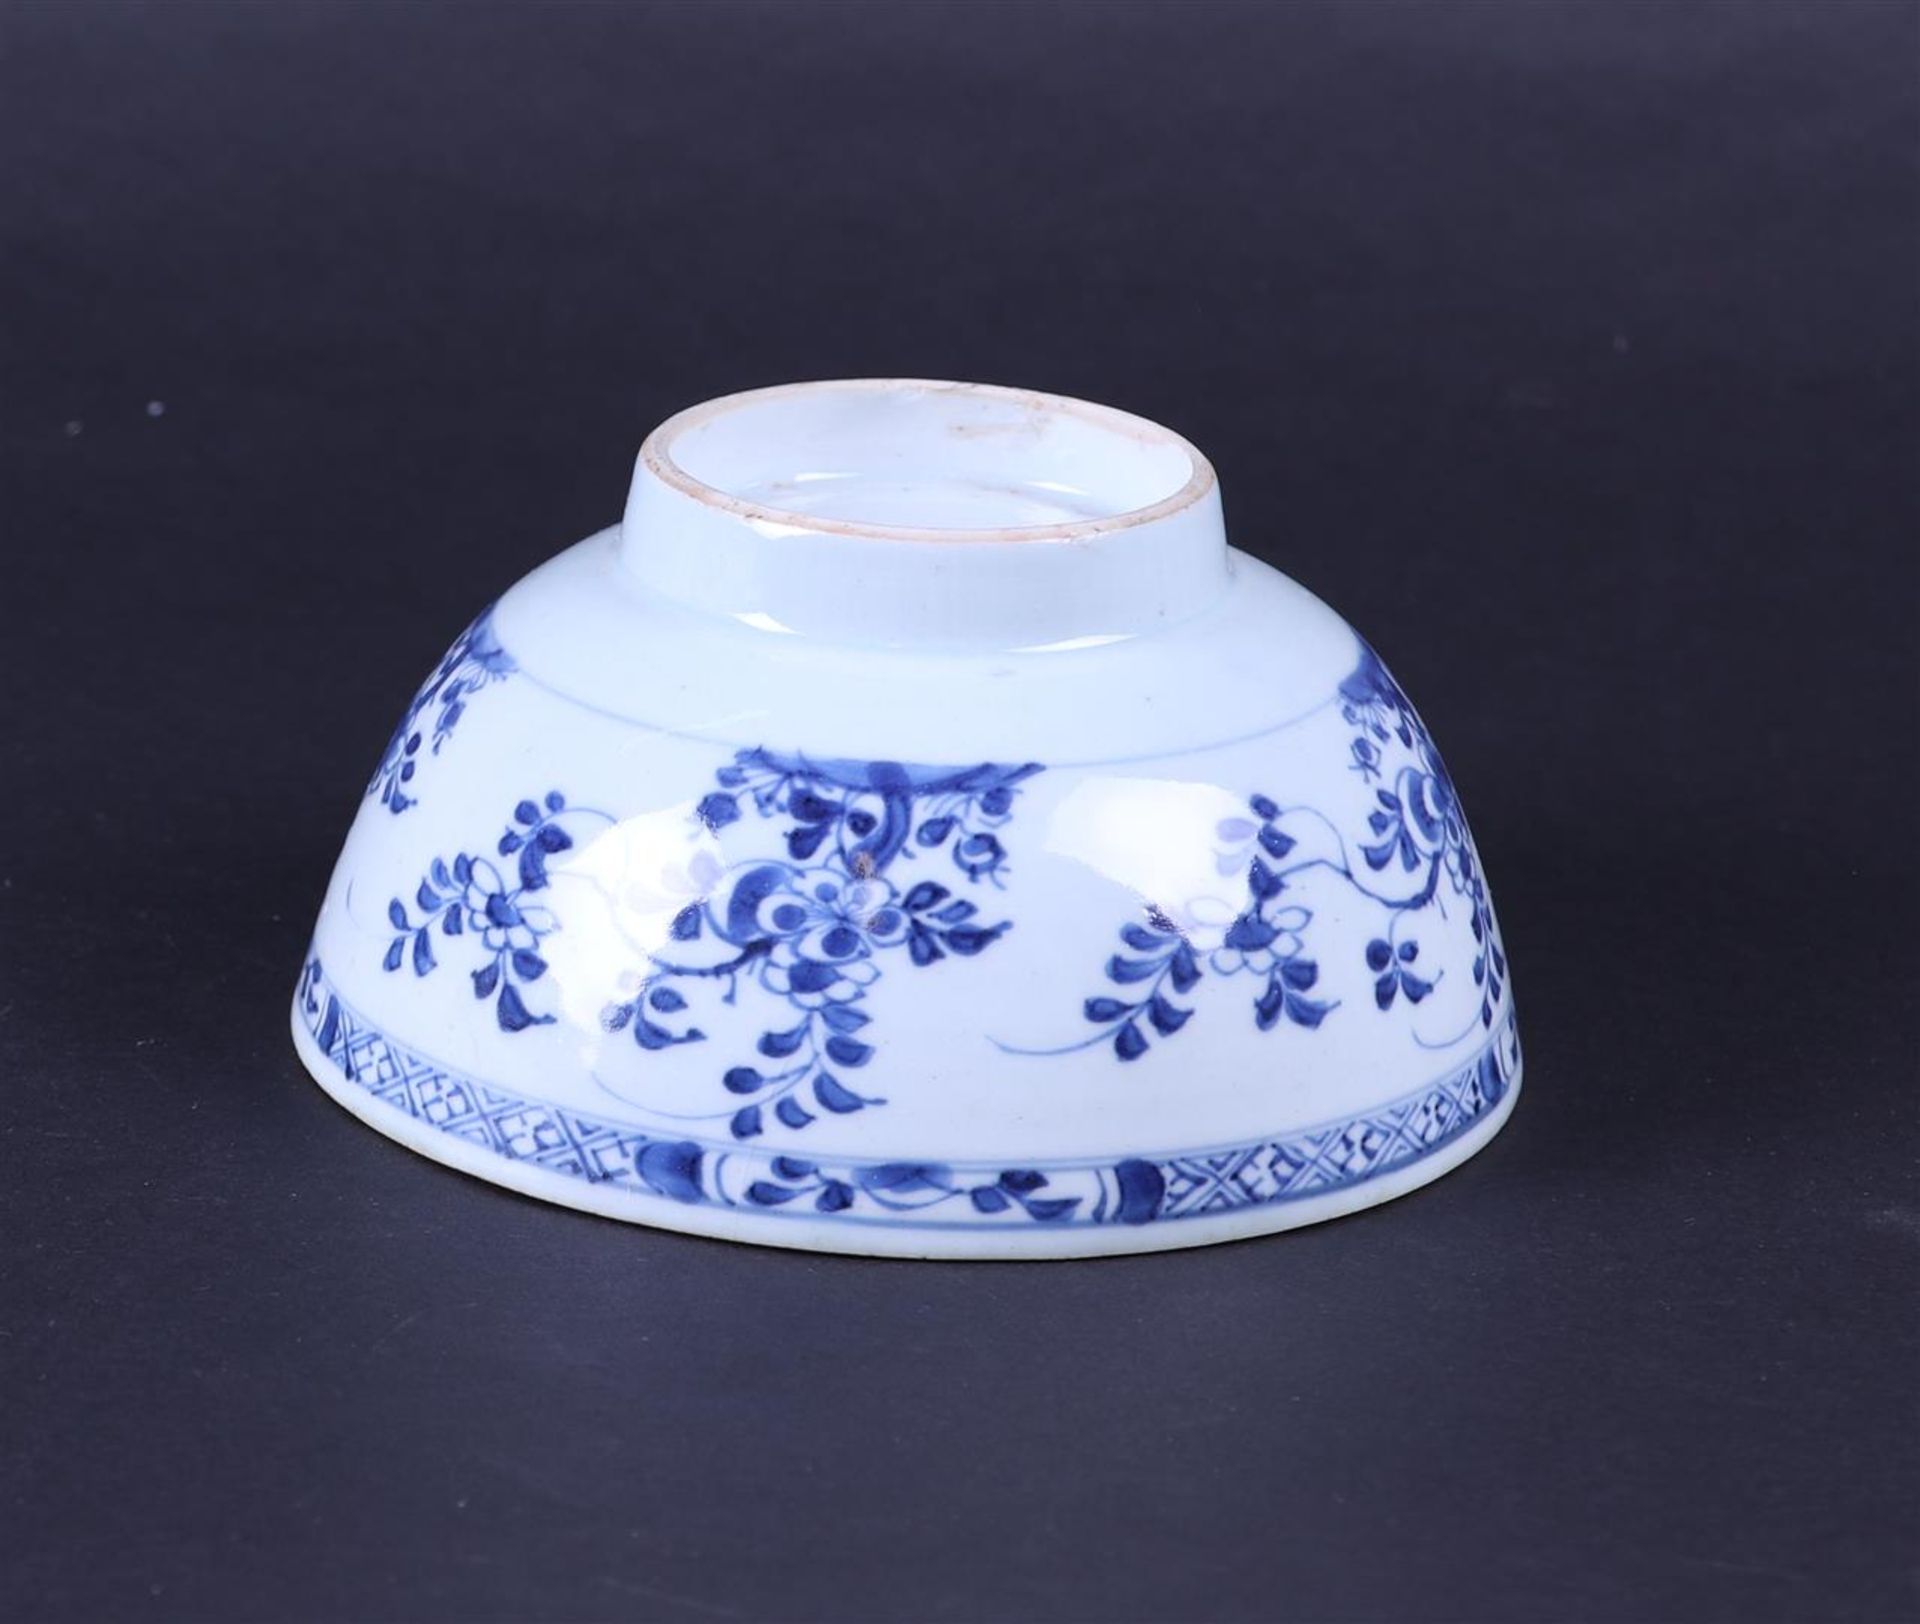 A porcelain bowl with floral decor. China, 18th century. - Bild 2 aus 2